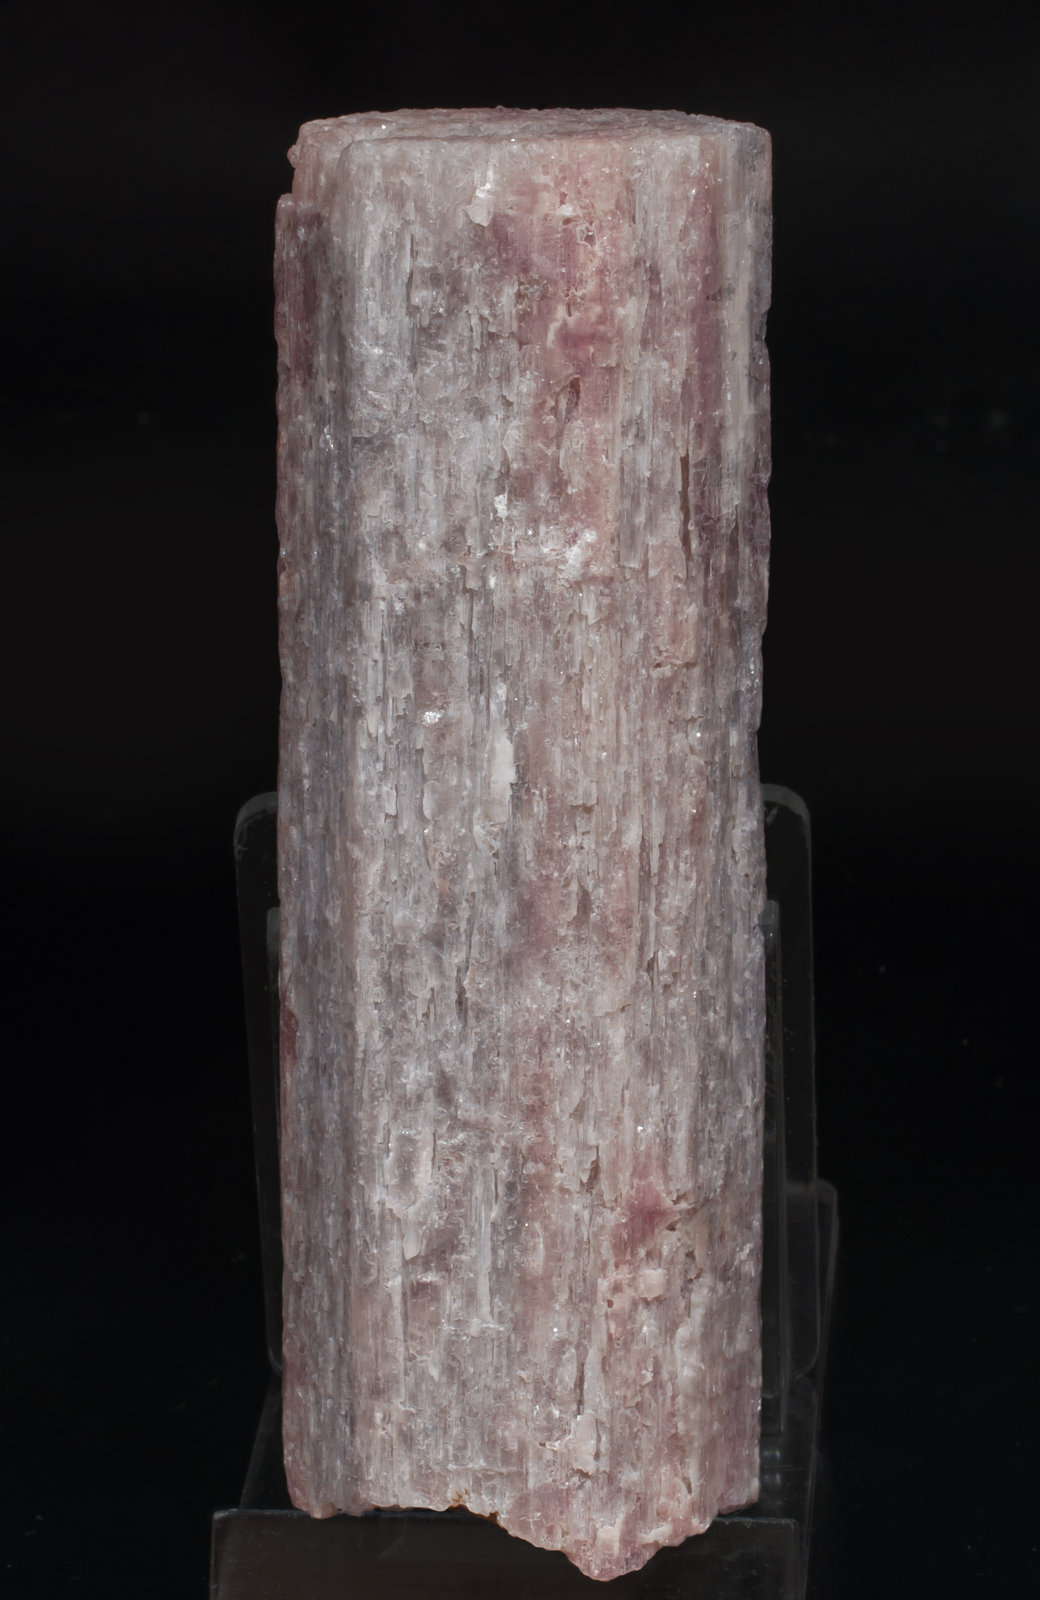 specimens/s_imagesAH6/Lepidolite-NG69AH6r.jpg